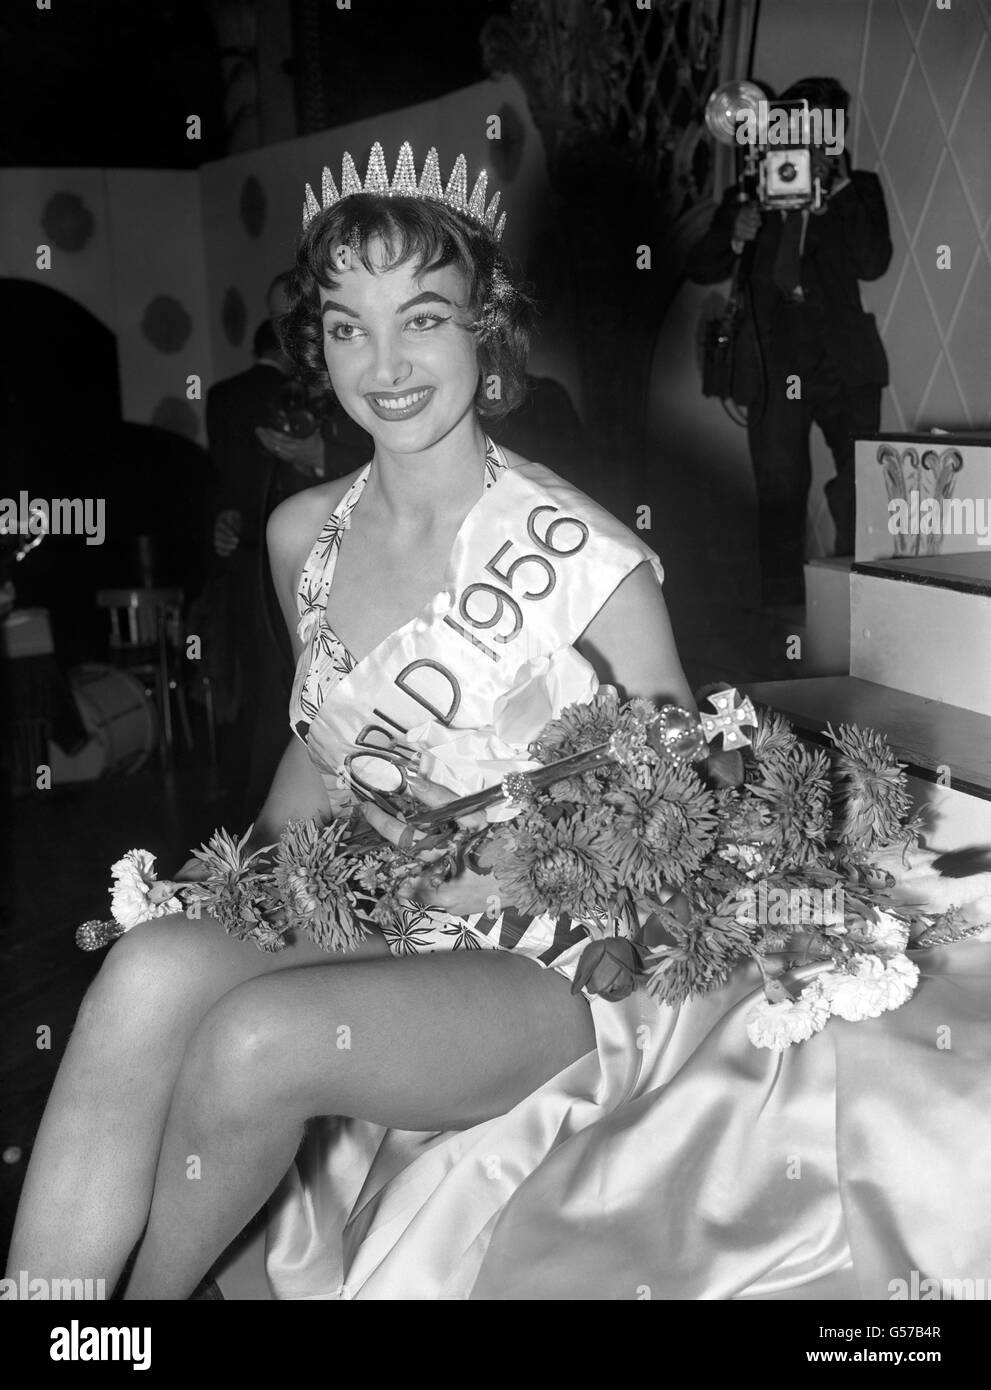 MISS WORLD 1956: Die Brünette Petra Schurmann, Miss Deutschland, trägt die Siegessasche, nachdem sie den Titel Miss World 1956 im Finale im Lyceum, Strand, London, gewonnen hat. Petra, 23, ist Studentin und Model mit Ambitionen Schauspielerin zu werden. Stockfoto